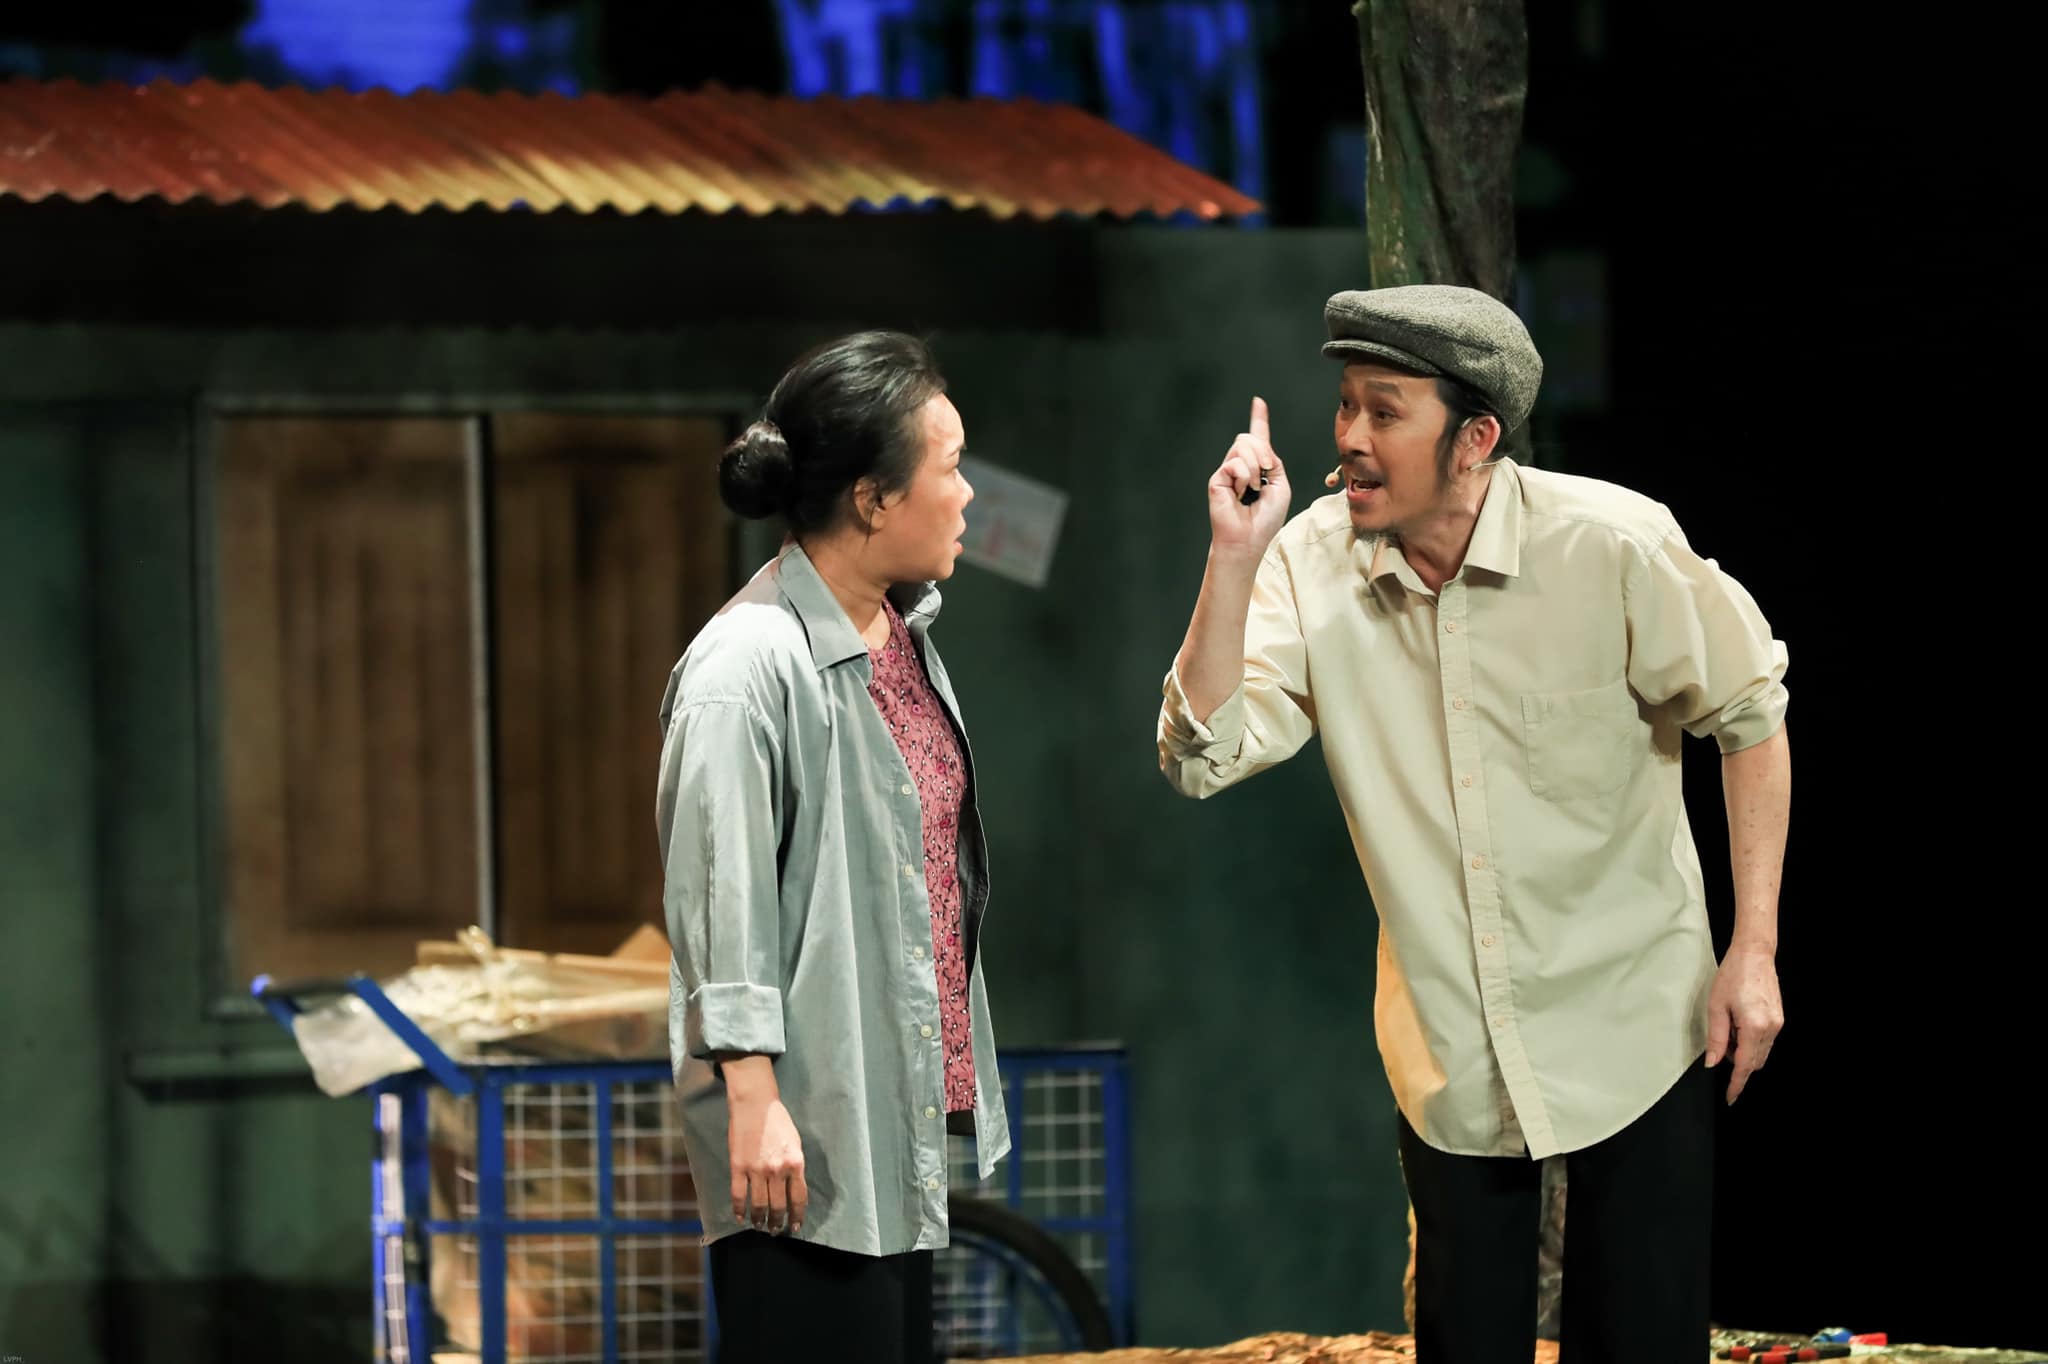 Vở kịch 'Lạc giữa biển người' được khen ngợi bởi ý nghĩa nhân văn và diễn xuất ăn ý của Việt Hương và Hoài Linh.